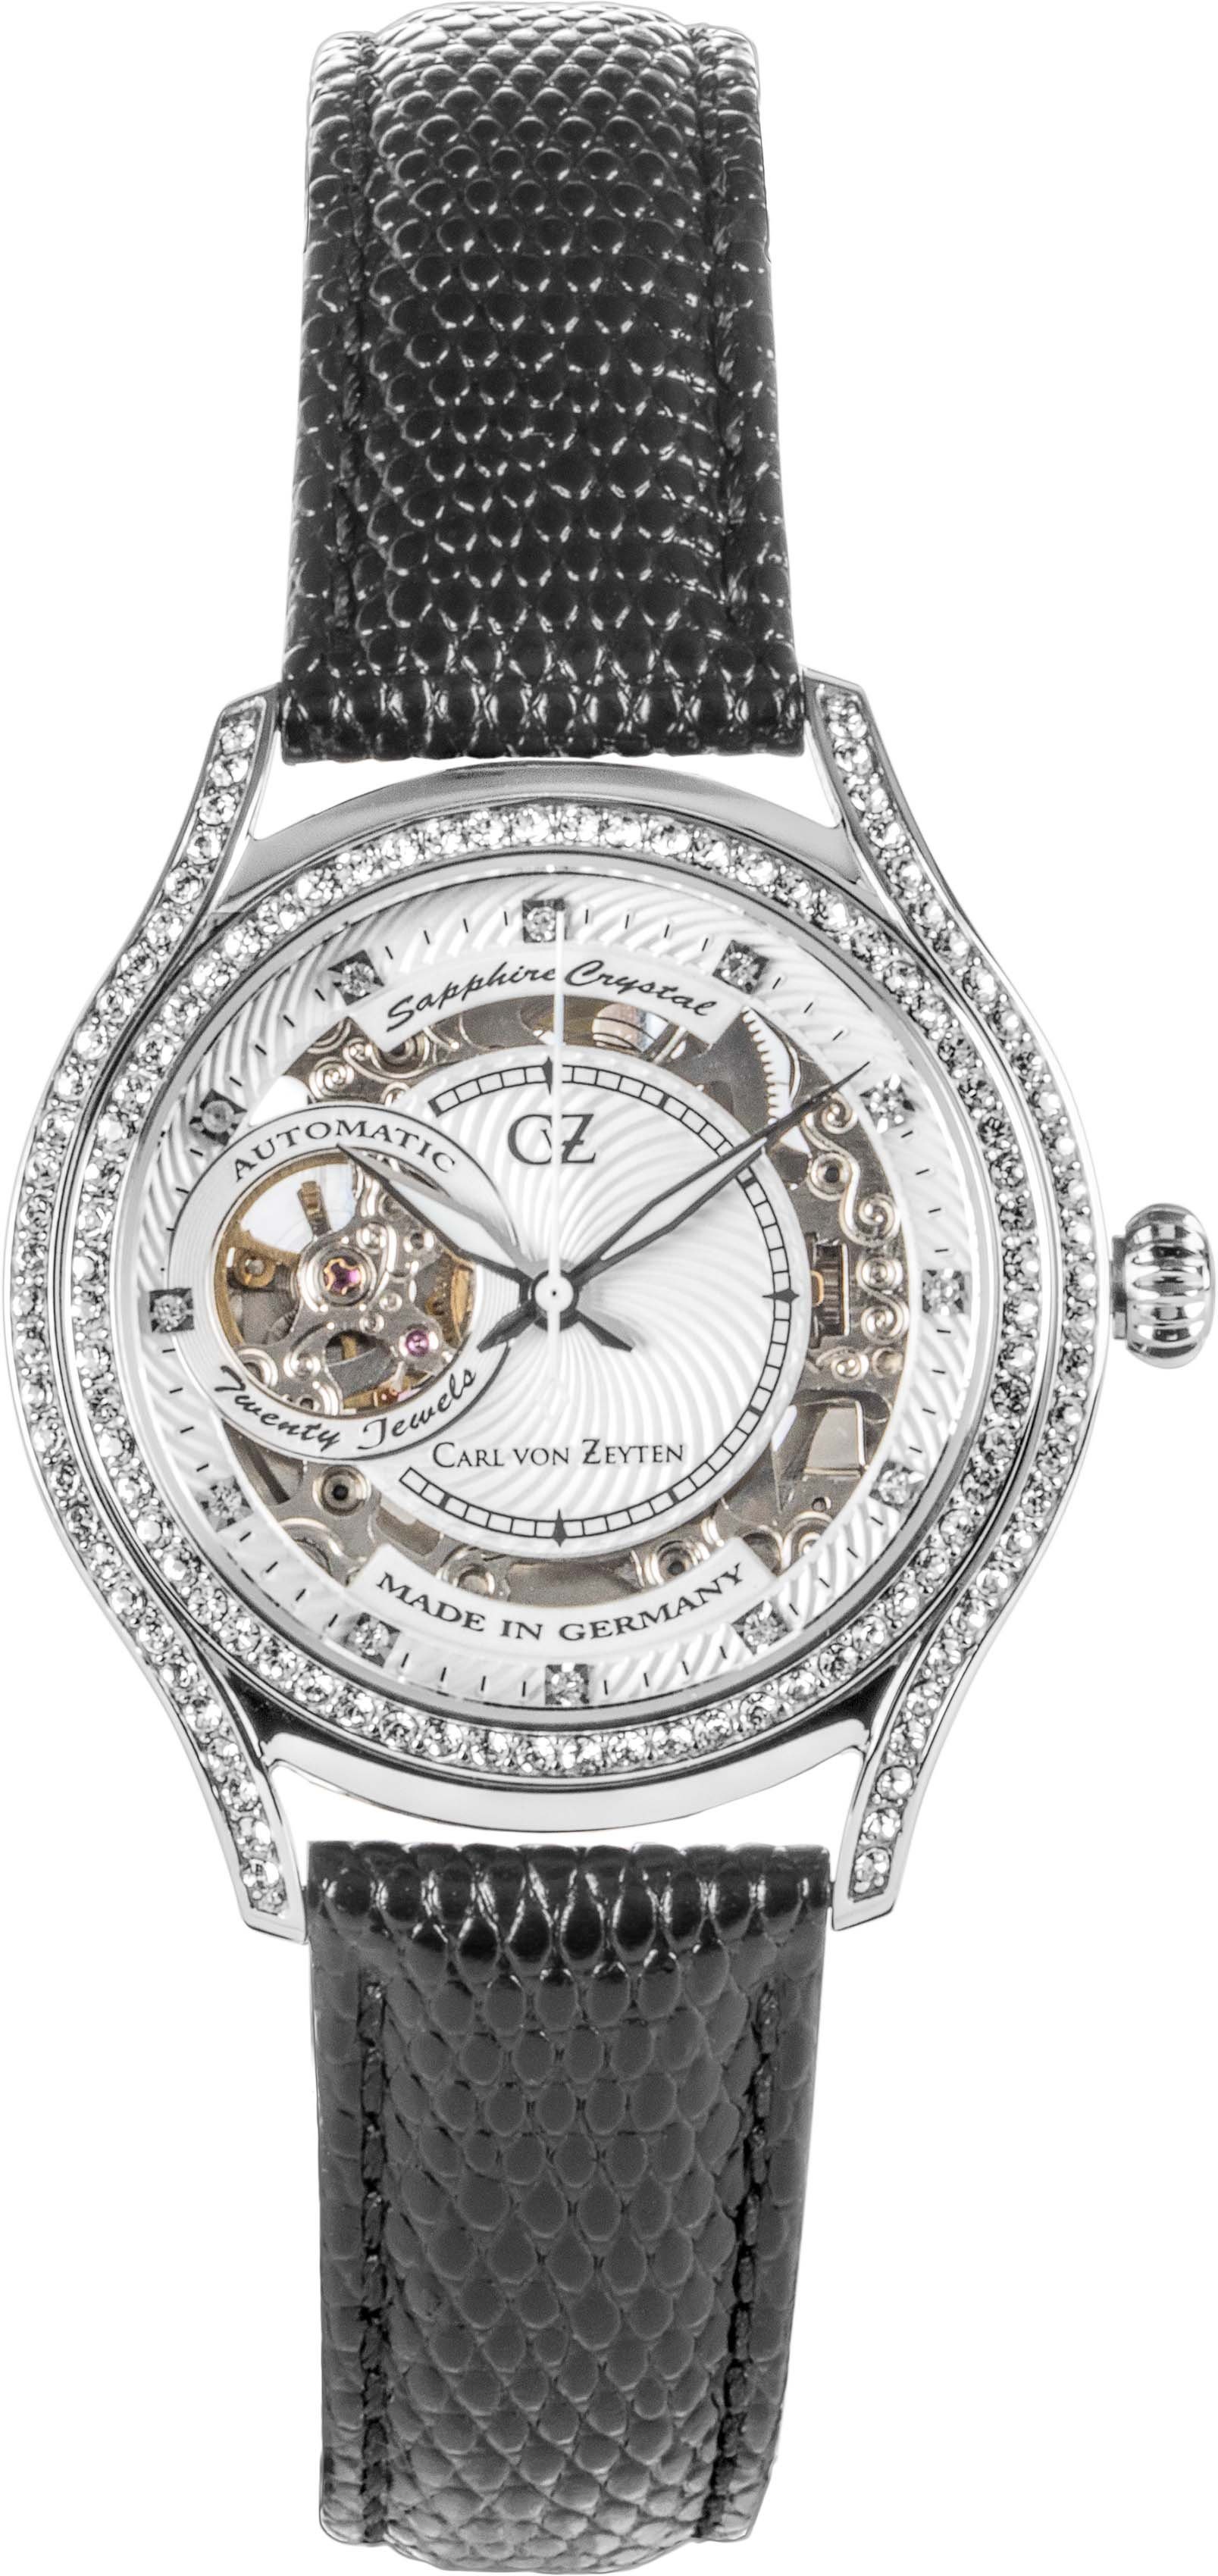 Carl von Zeyten Automatikuhr Seewald, CVZ0069WHS, Armbanduhr, Damenuhr, Saphirglas, Made in Germany, Mechanische Uhr